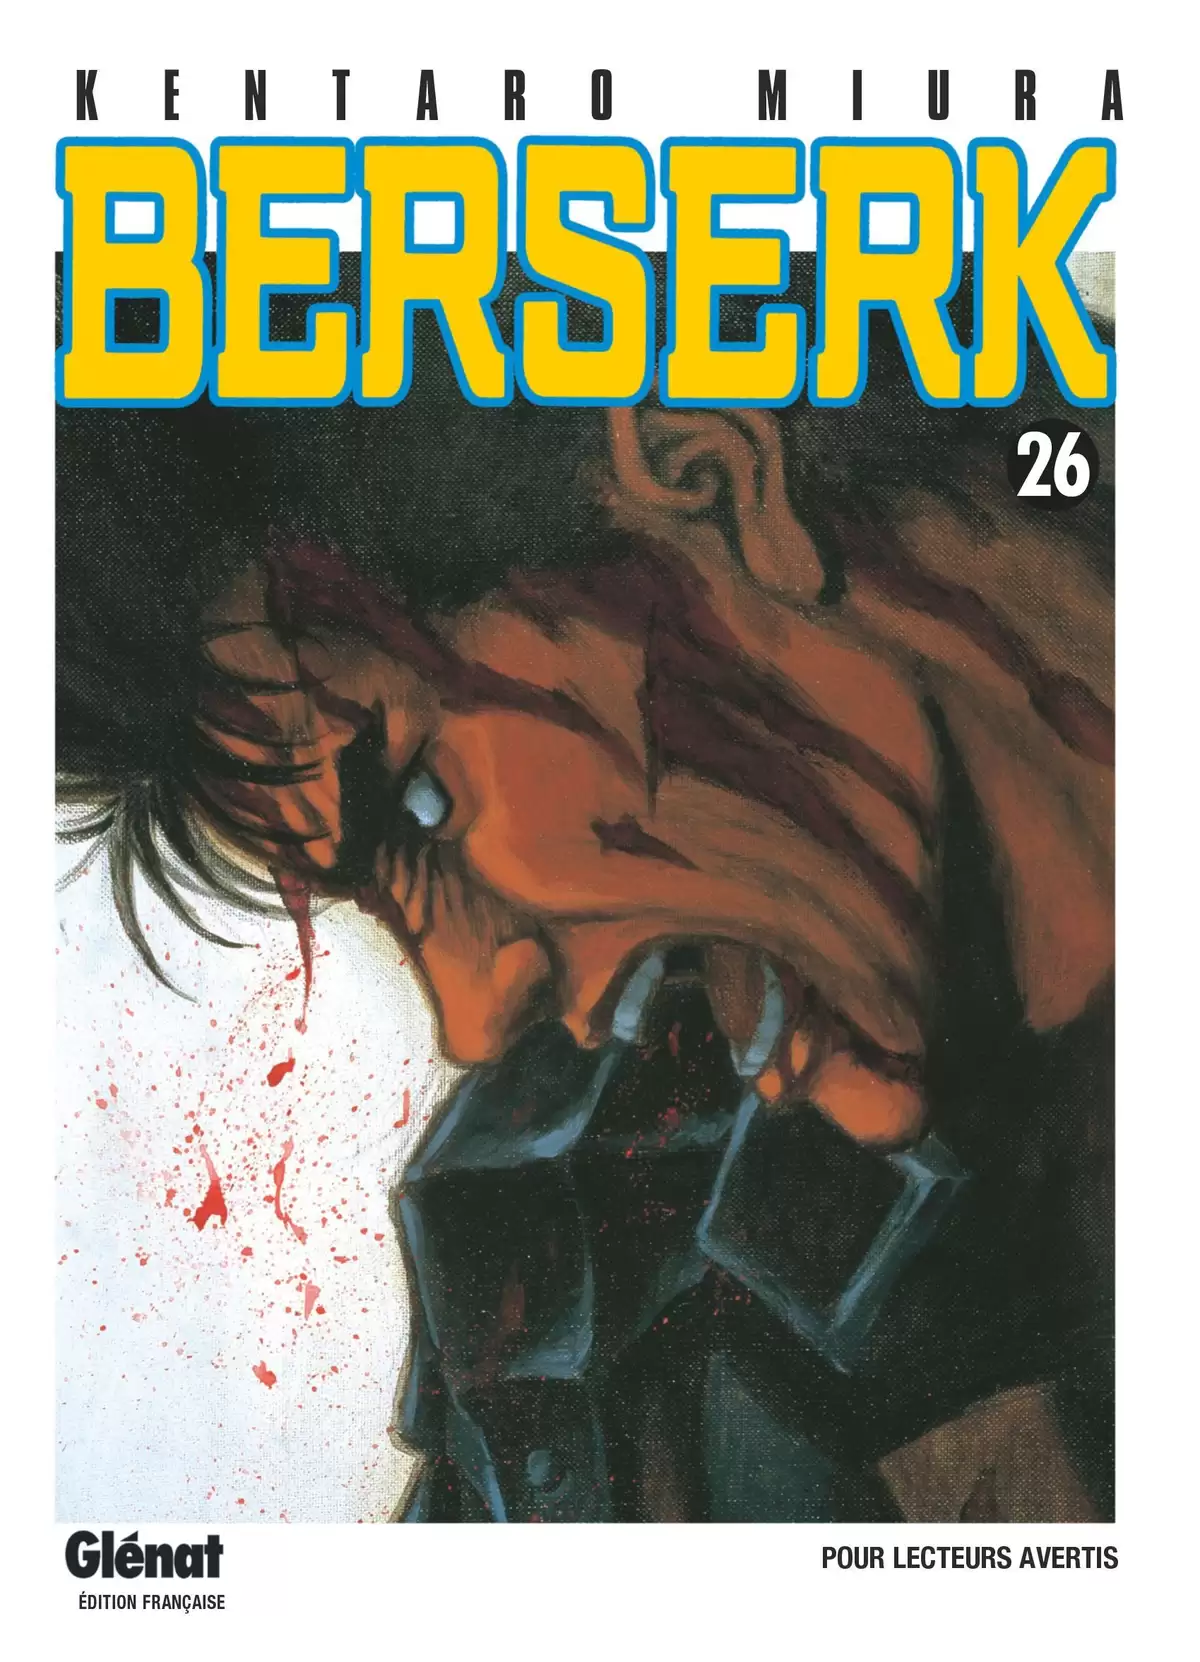 Berserk Volume 26 page 1